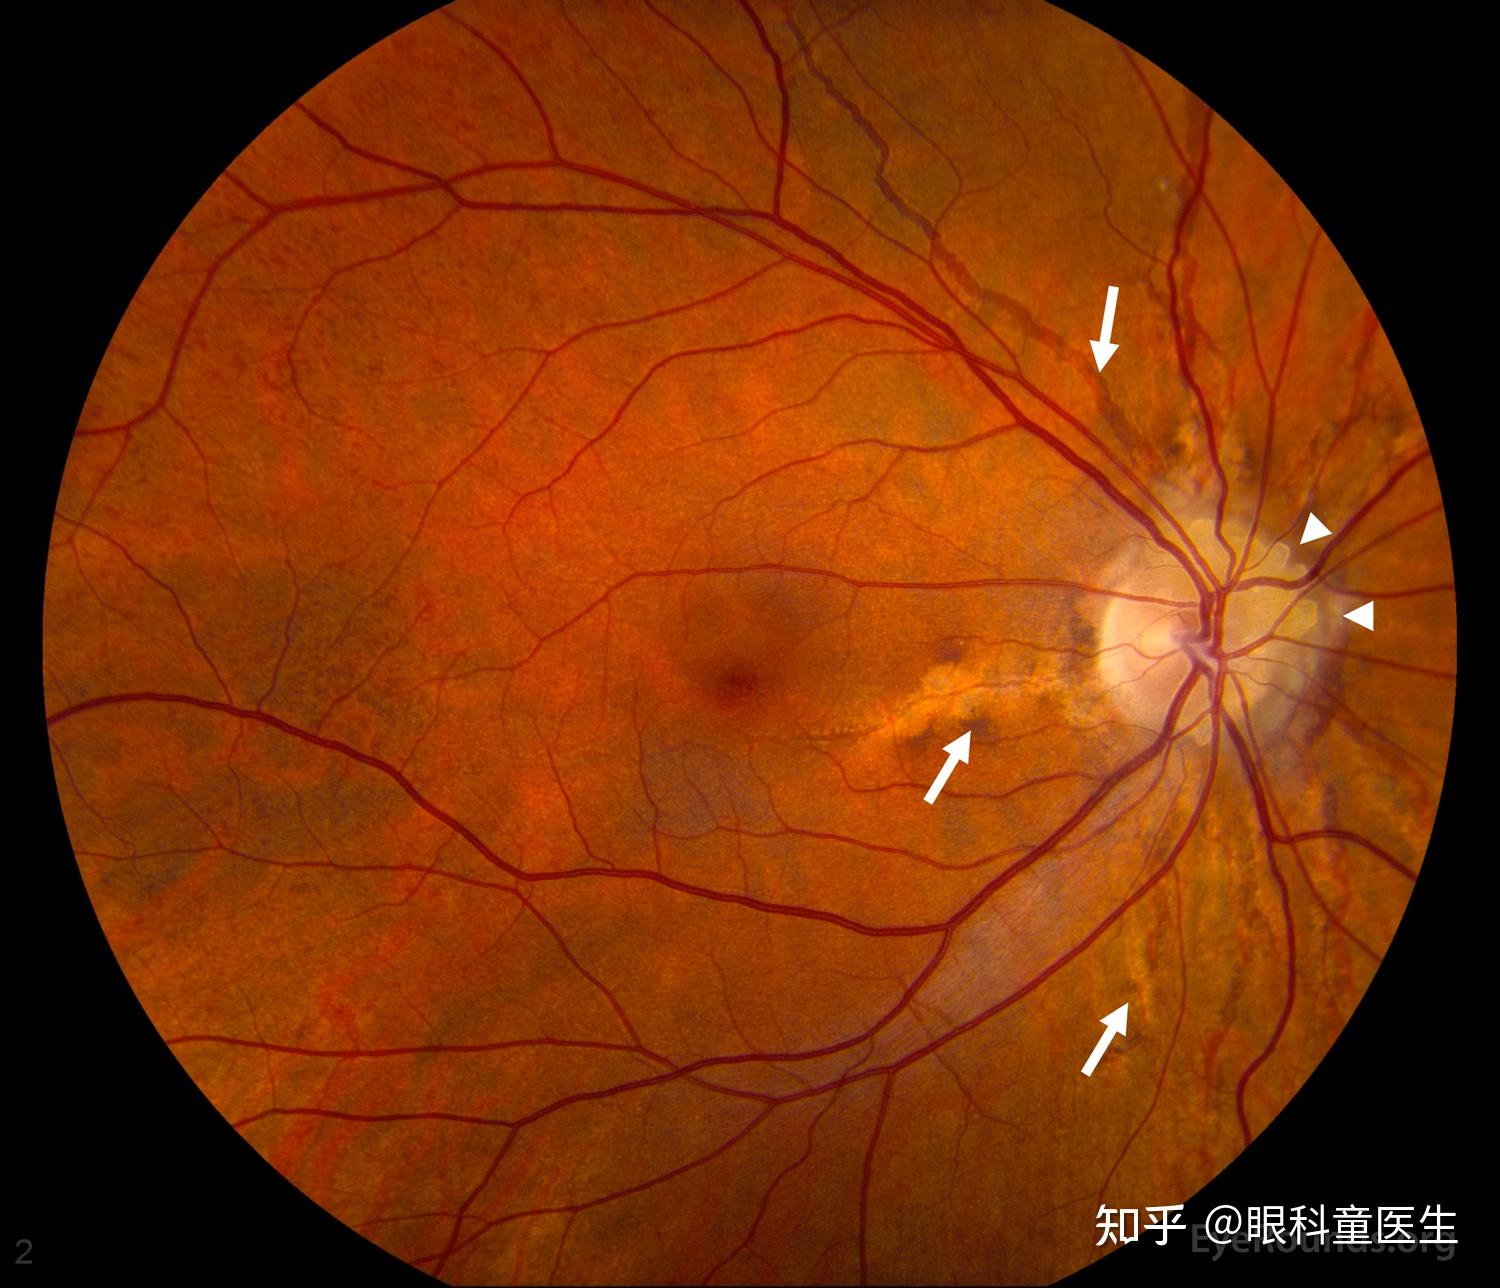 面向视网膜脱离手术的硅油填充模拟